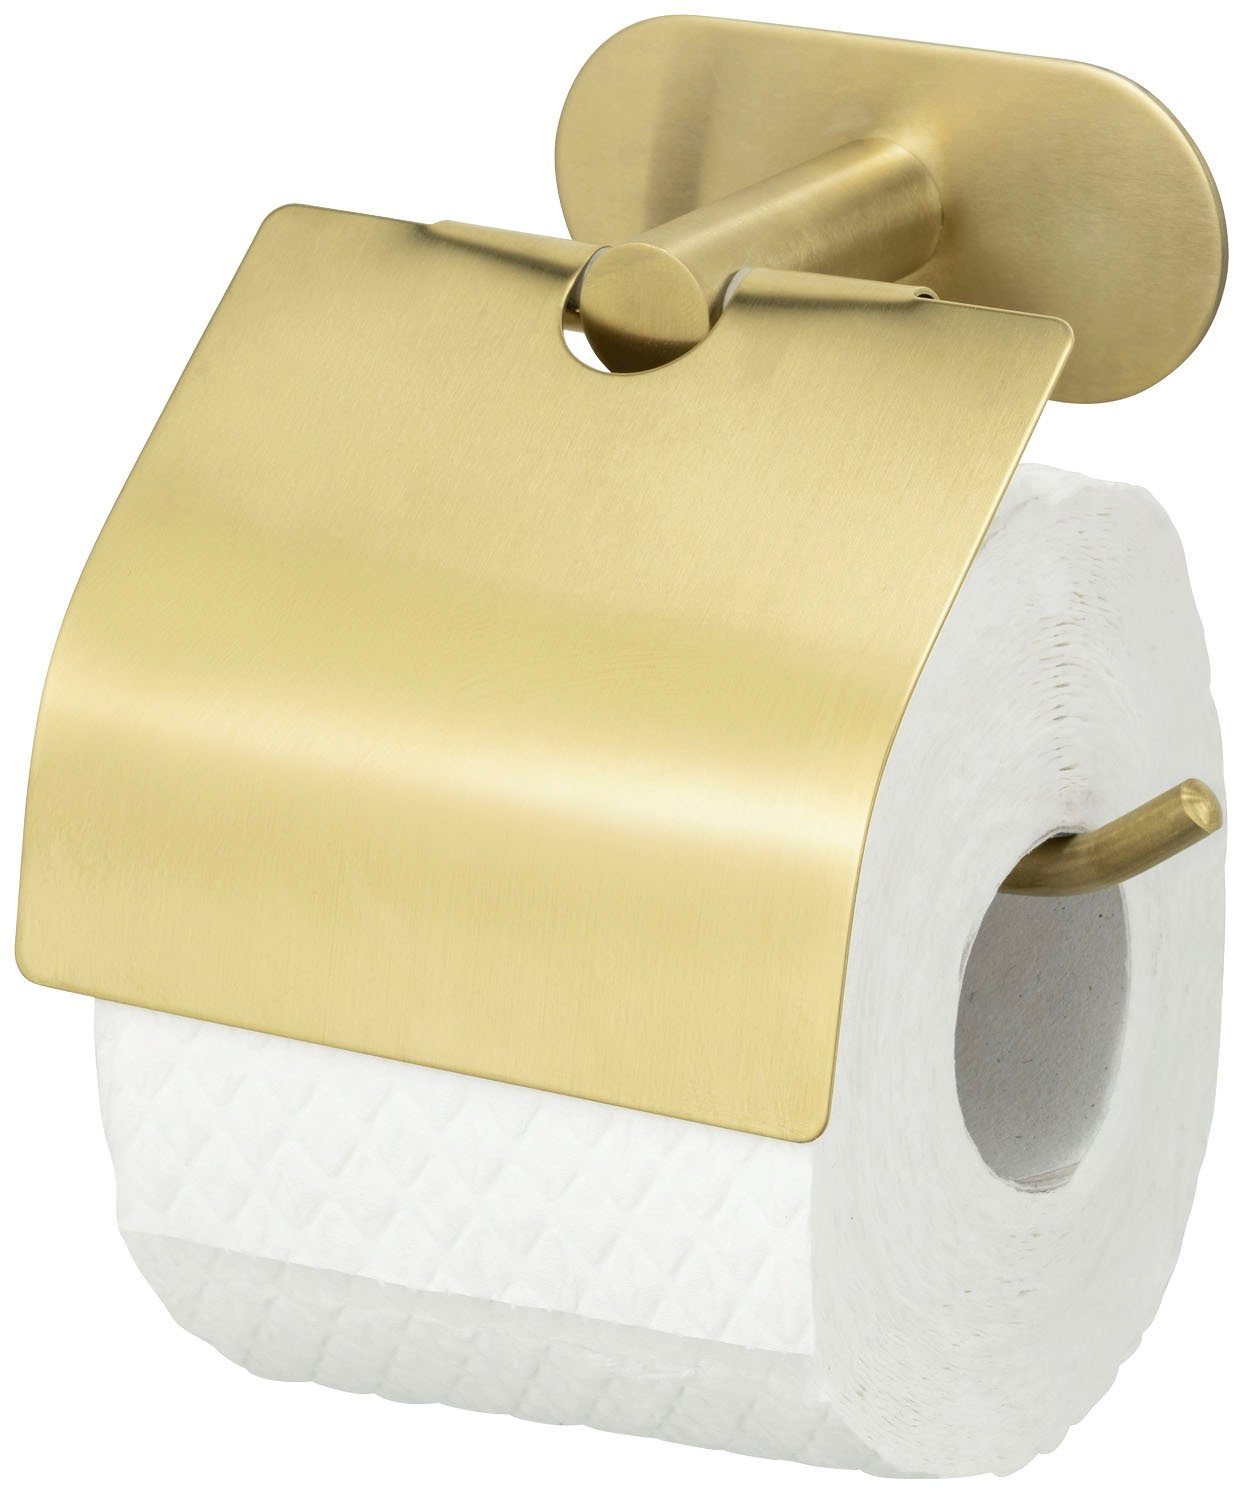 Bohren Toilettenpapierhalter Deckel, mit ohne Turbo-Loc®, WENKO Befestigen